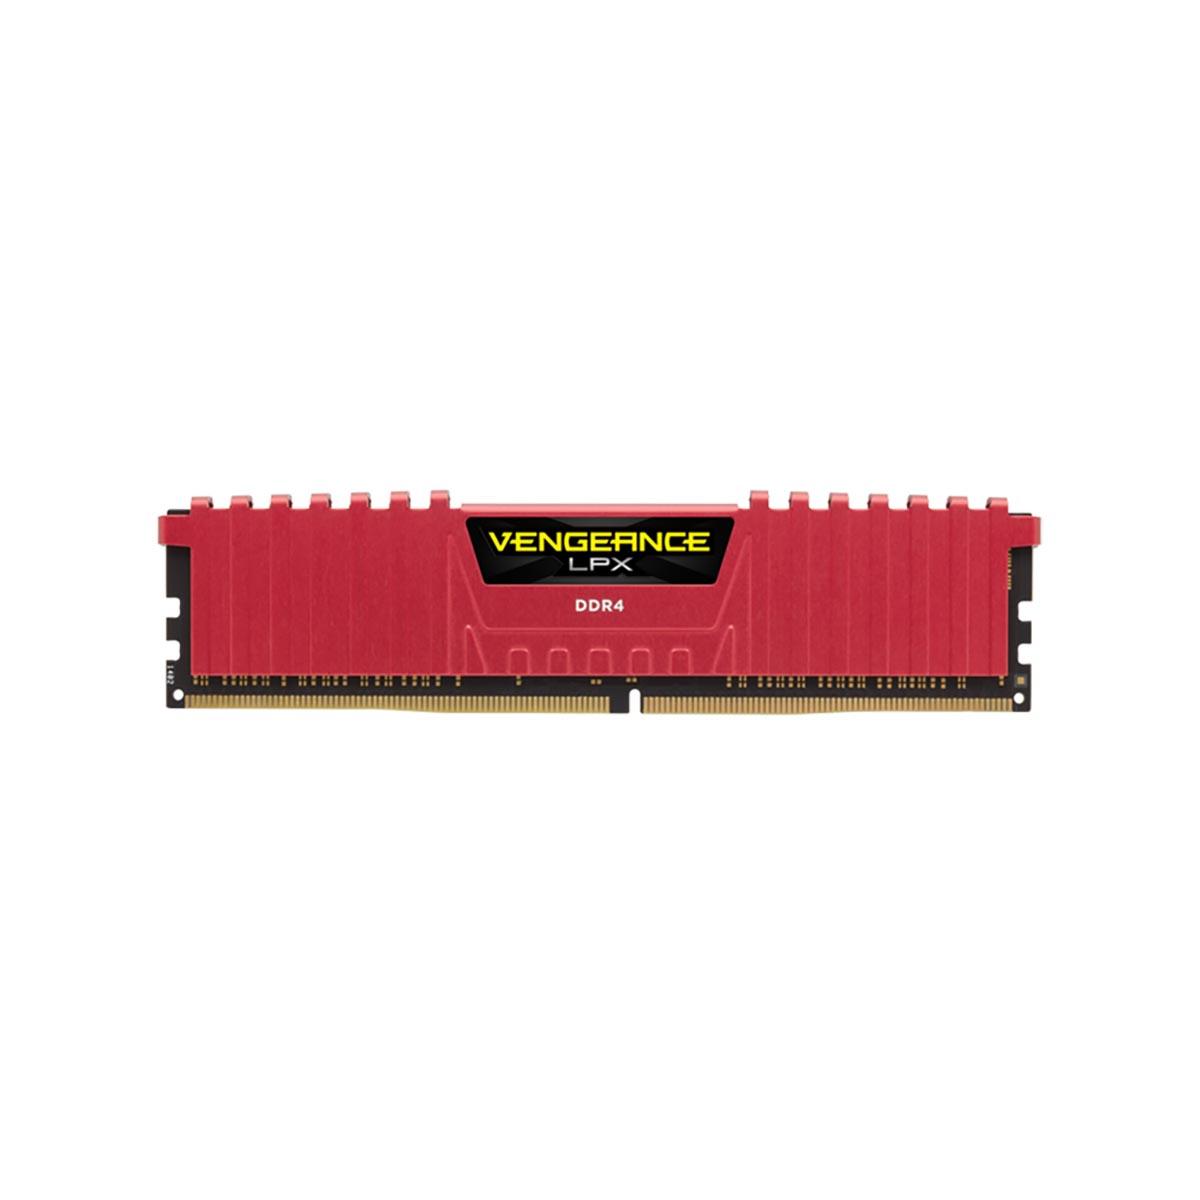 MEMORIA DIMM DDR4 CORSAIR (CMK8GX4M1A2400C16R) 8GB 2400MHZ VENGEANCE LPX DISIP. ROJO - CMK8GX4M1A2400C16R